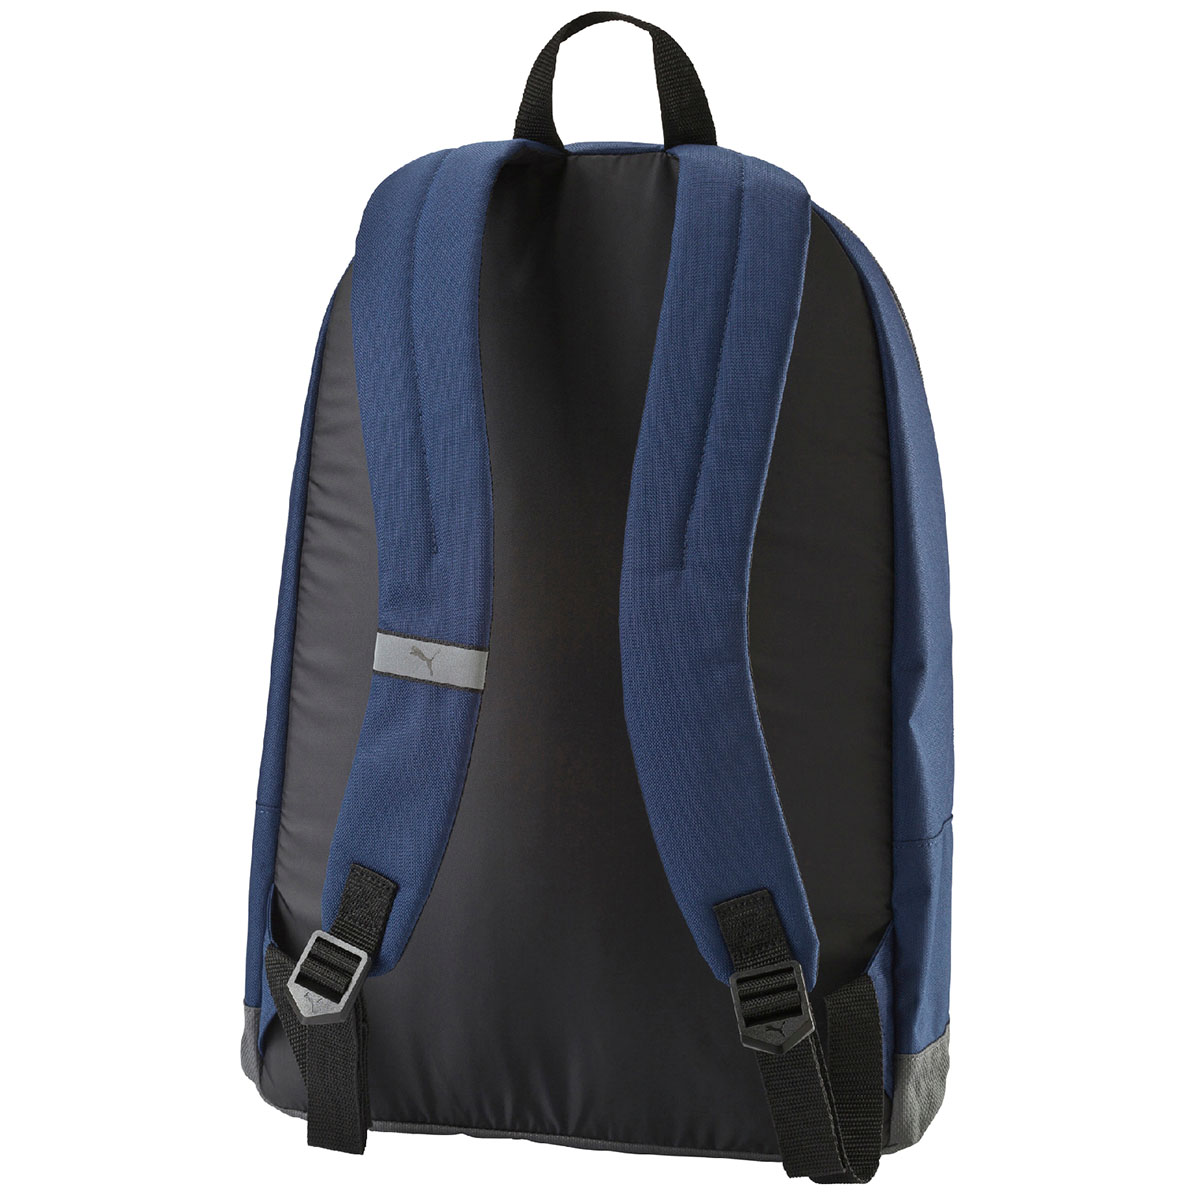 quai đeo của balo laptop pioneer backpack màu xanh navy